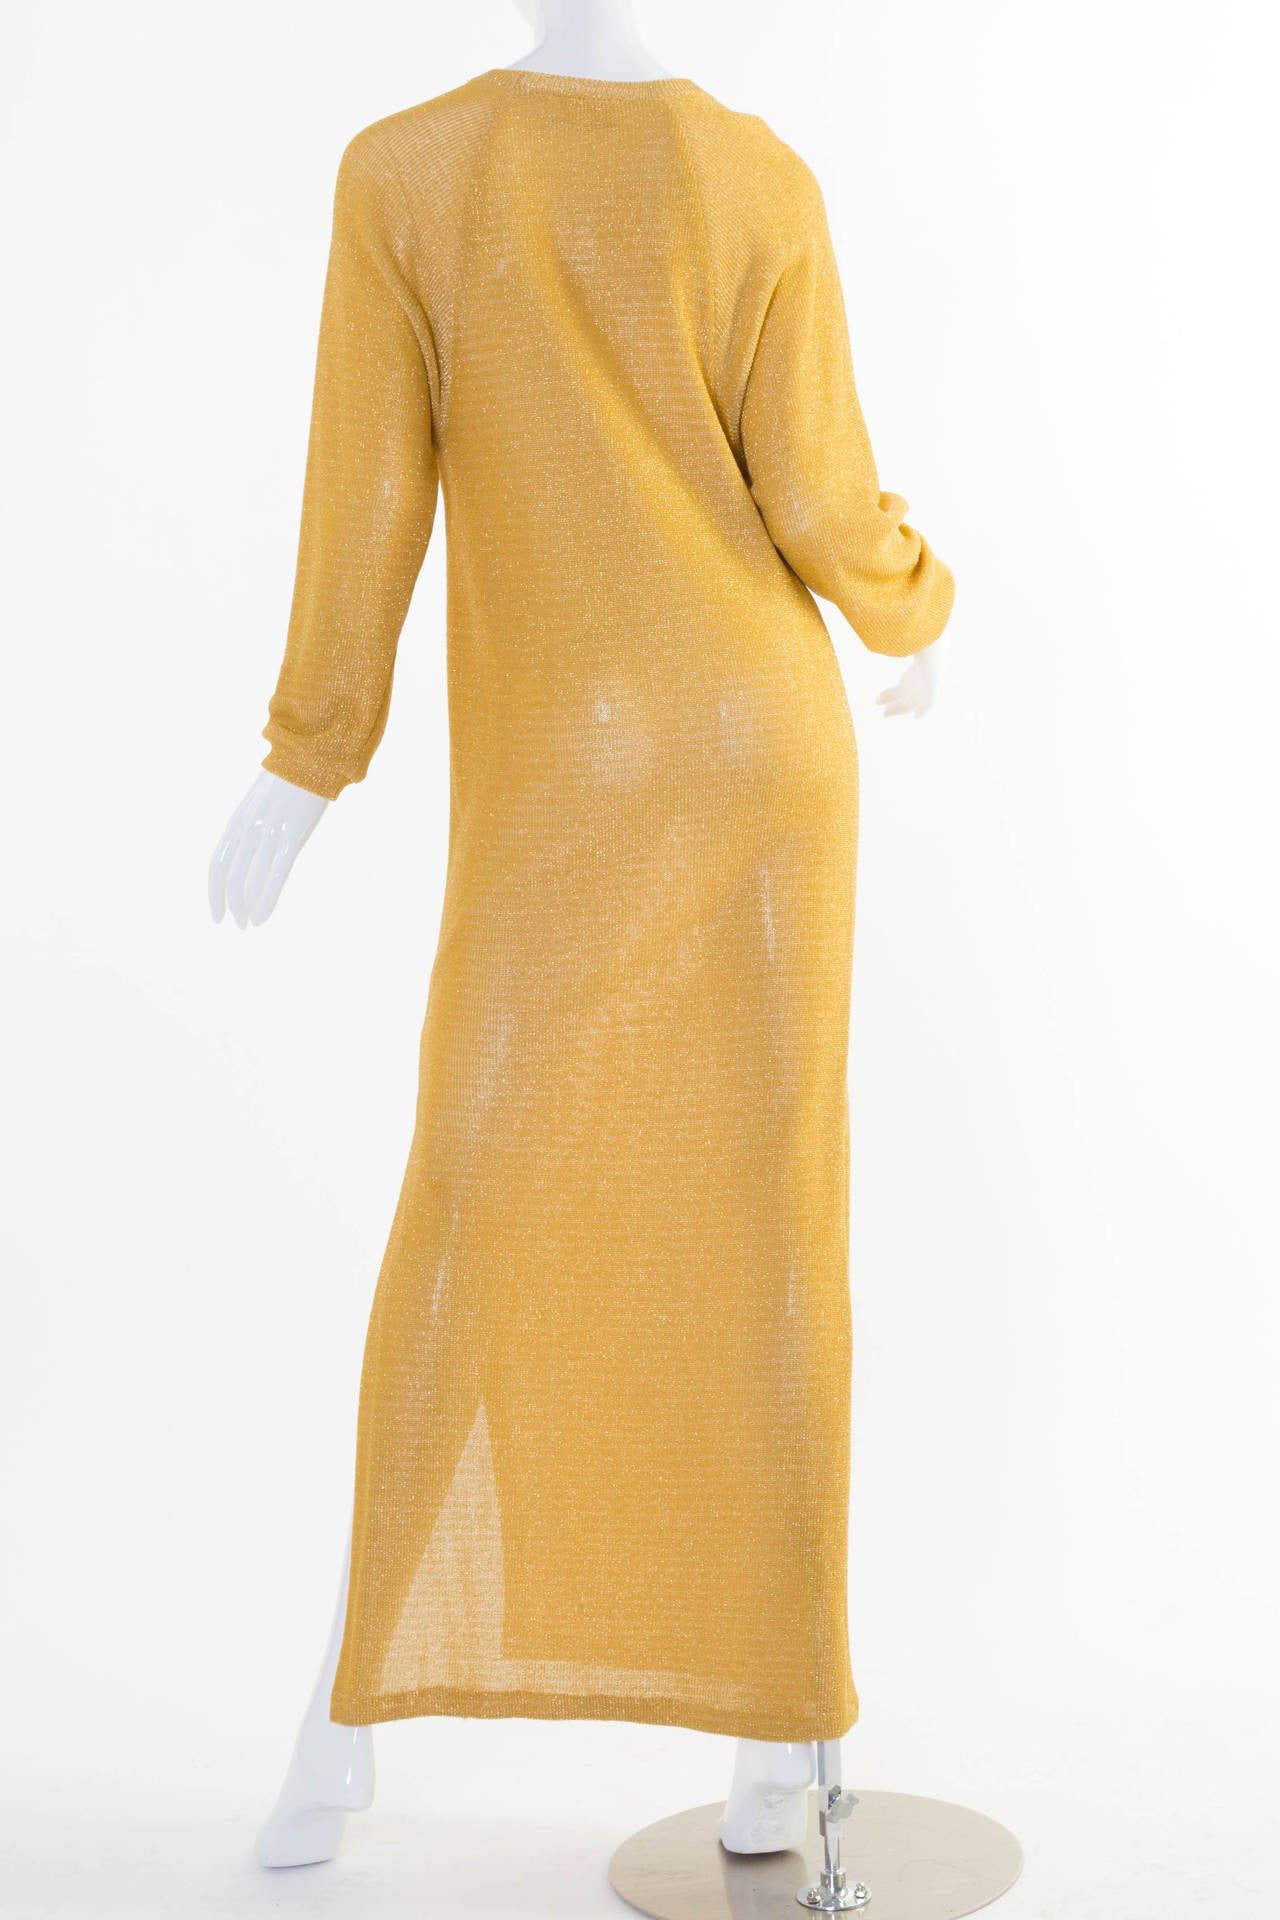 Vintage Bill Blass Gold Column Dress 1